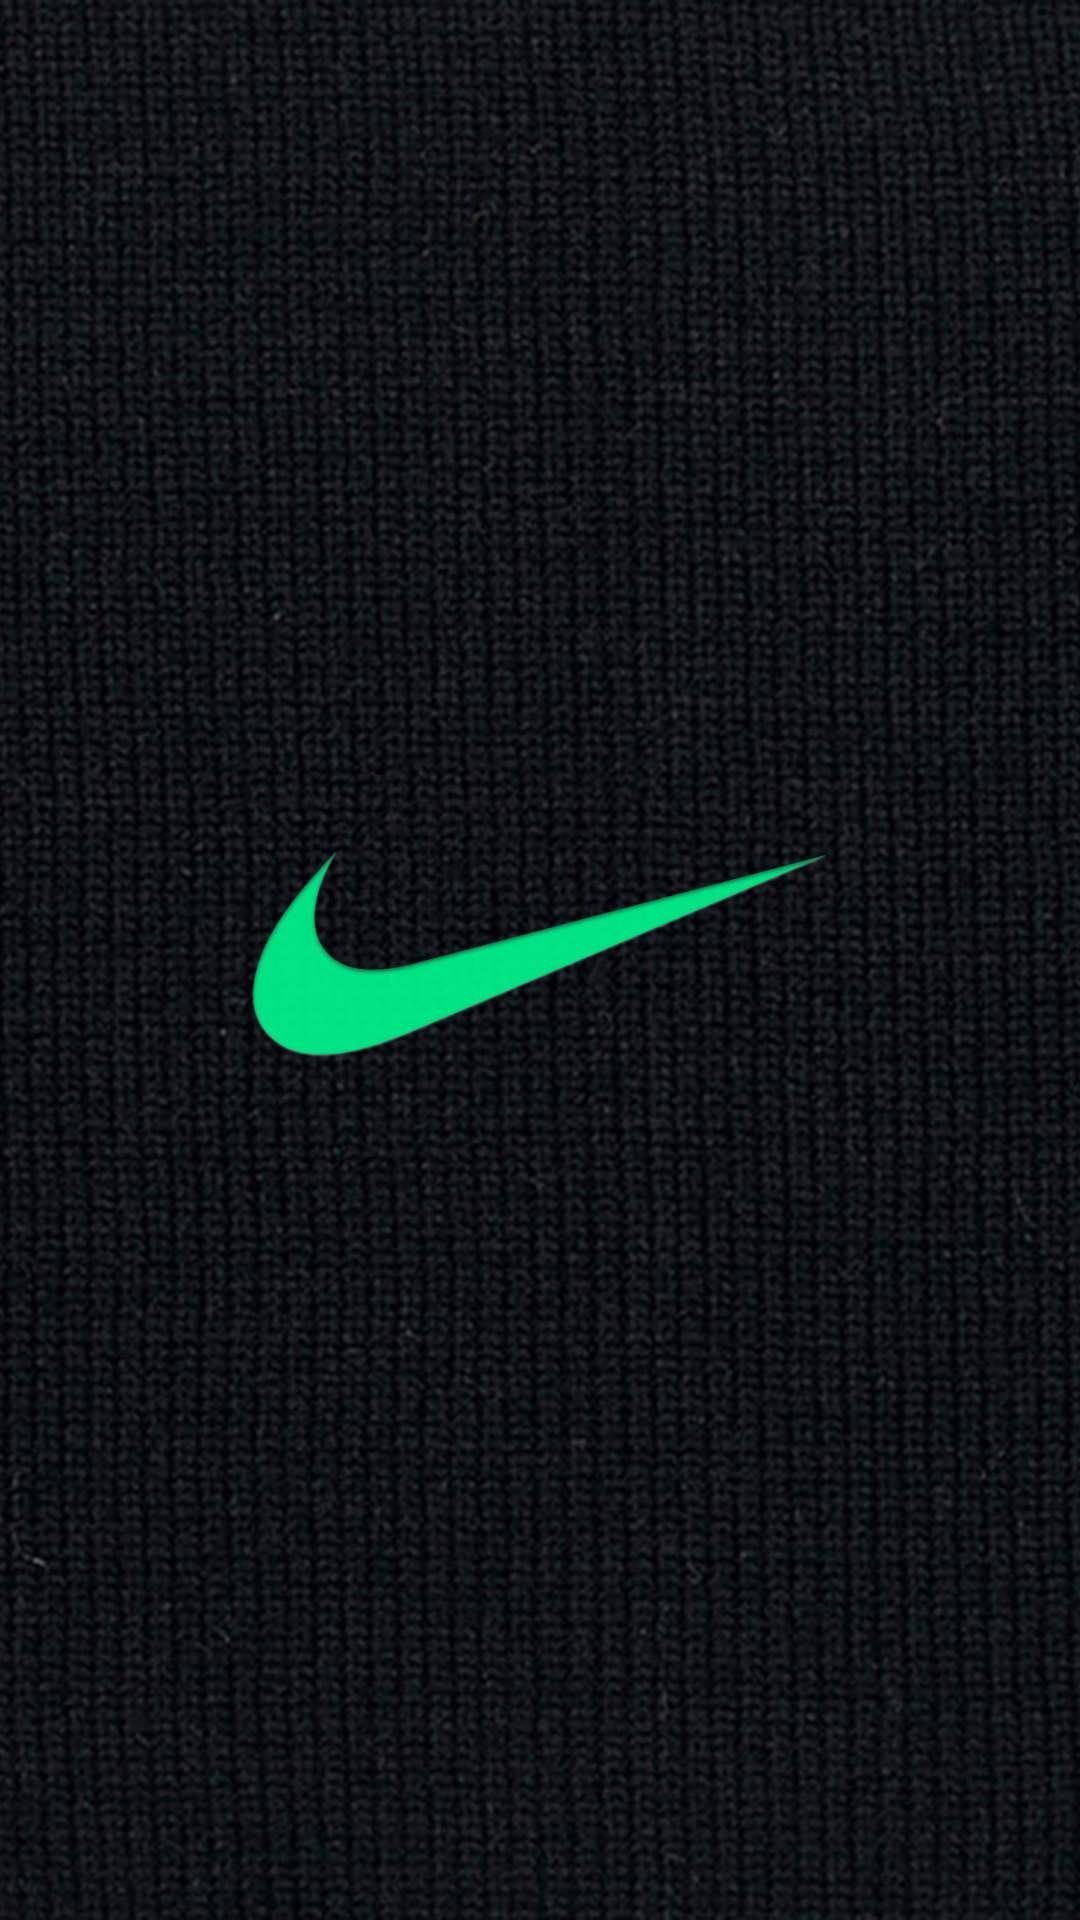 Muốn thật sáng tạo và nổi bật với những hình bối cảnh độc đáo? Hãy khám phá những hình nền xanh lá cây của Nike để tạo nên một không gian làm việc và giải trí đầy sinh động và tươi mới. Với hiệu ứng màu xanh mát mắt và logo Nike nổi bật, đây sẽ là sự lựa chọn tuyệt vời.